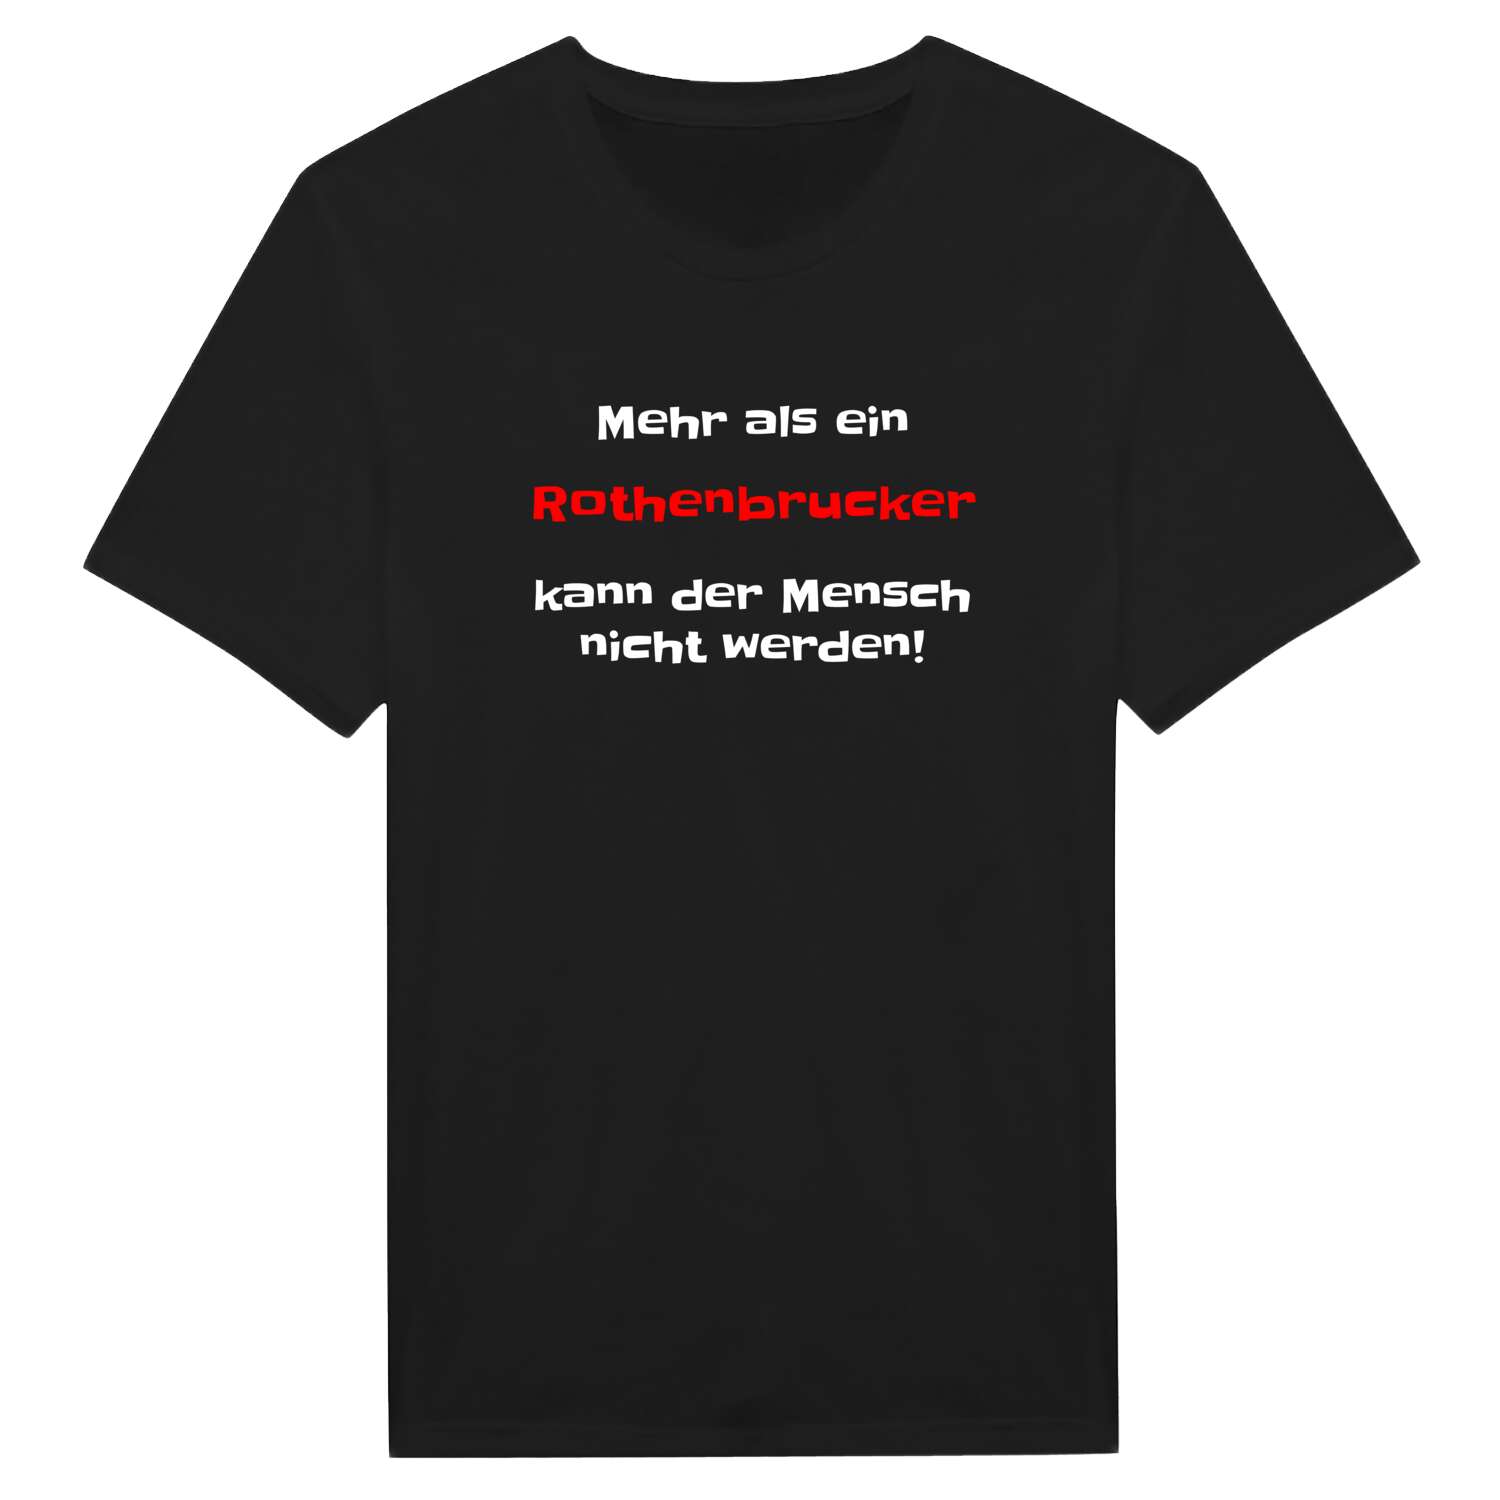 Rothenbruck T-Shirt »Mehr als ein«